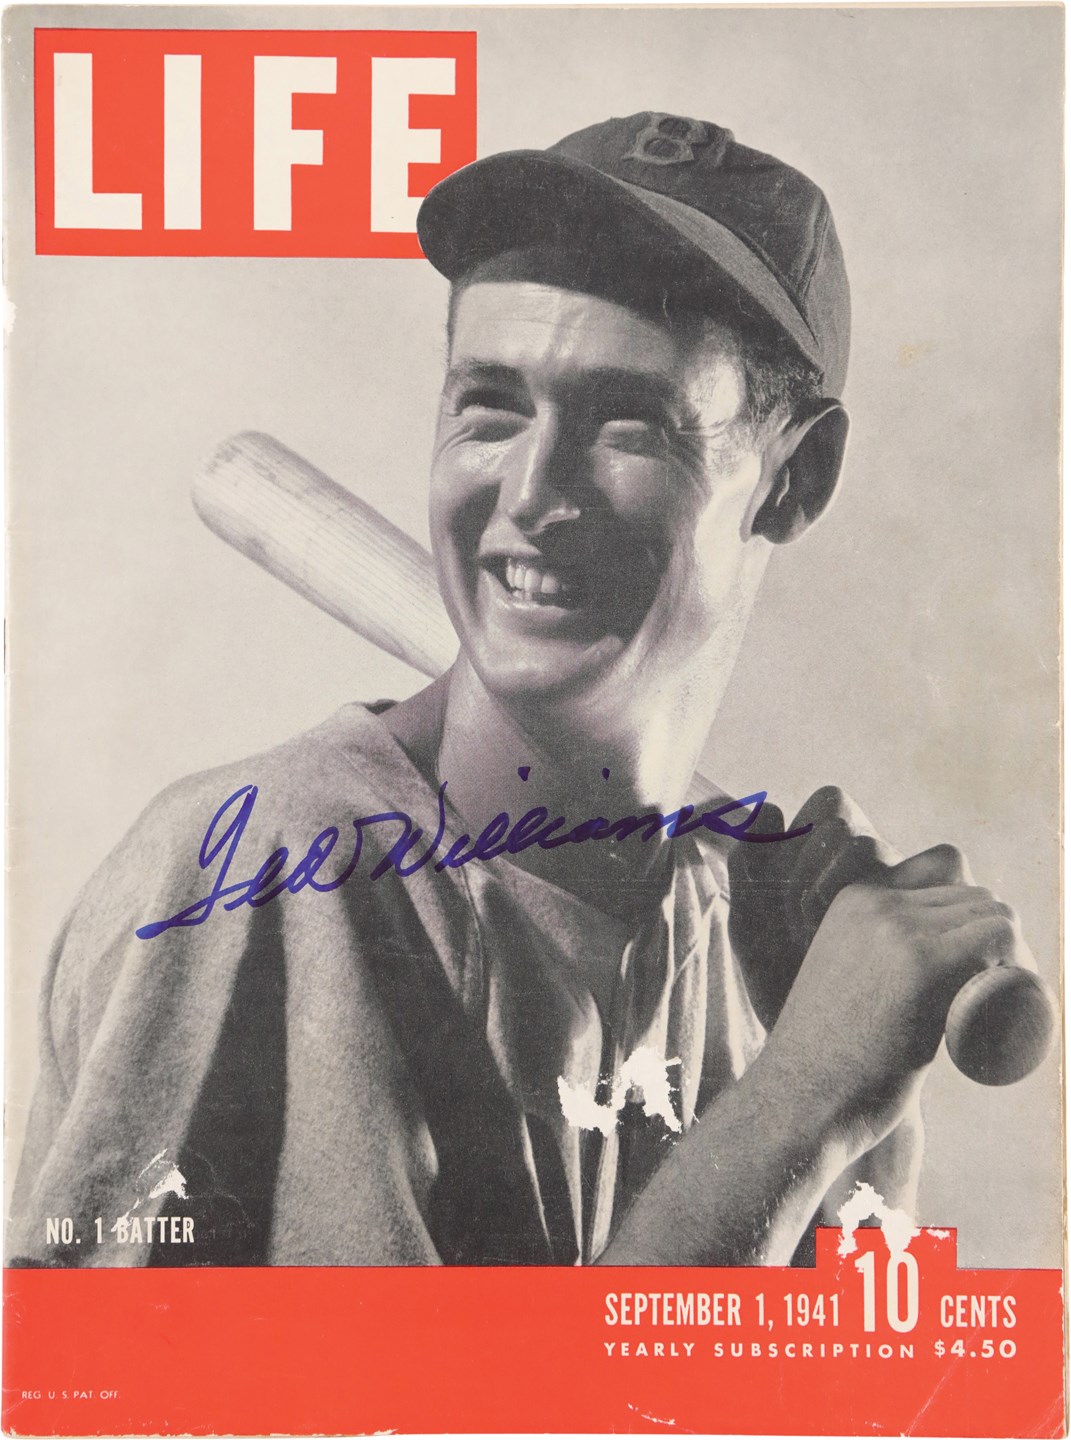 Baseball Autographs - 1941 Ted Williams Signed Life Magazine (JSA)